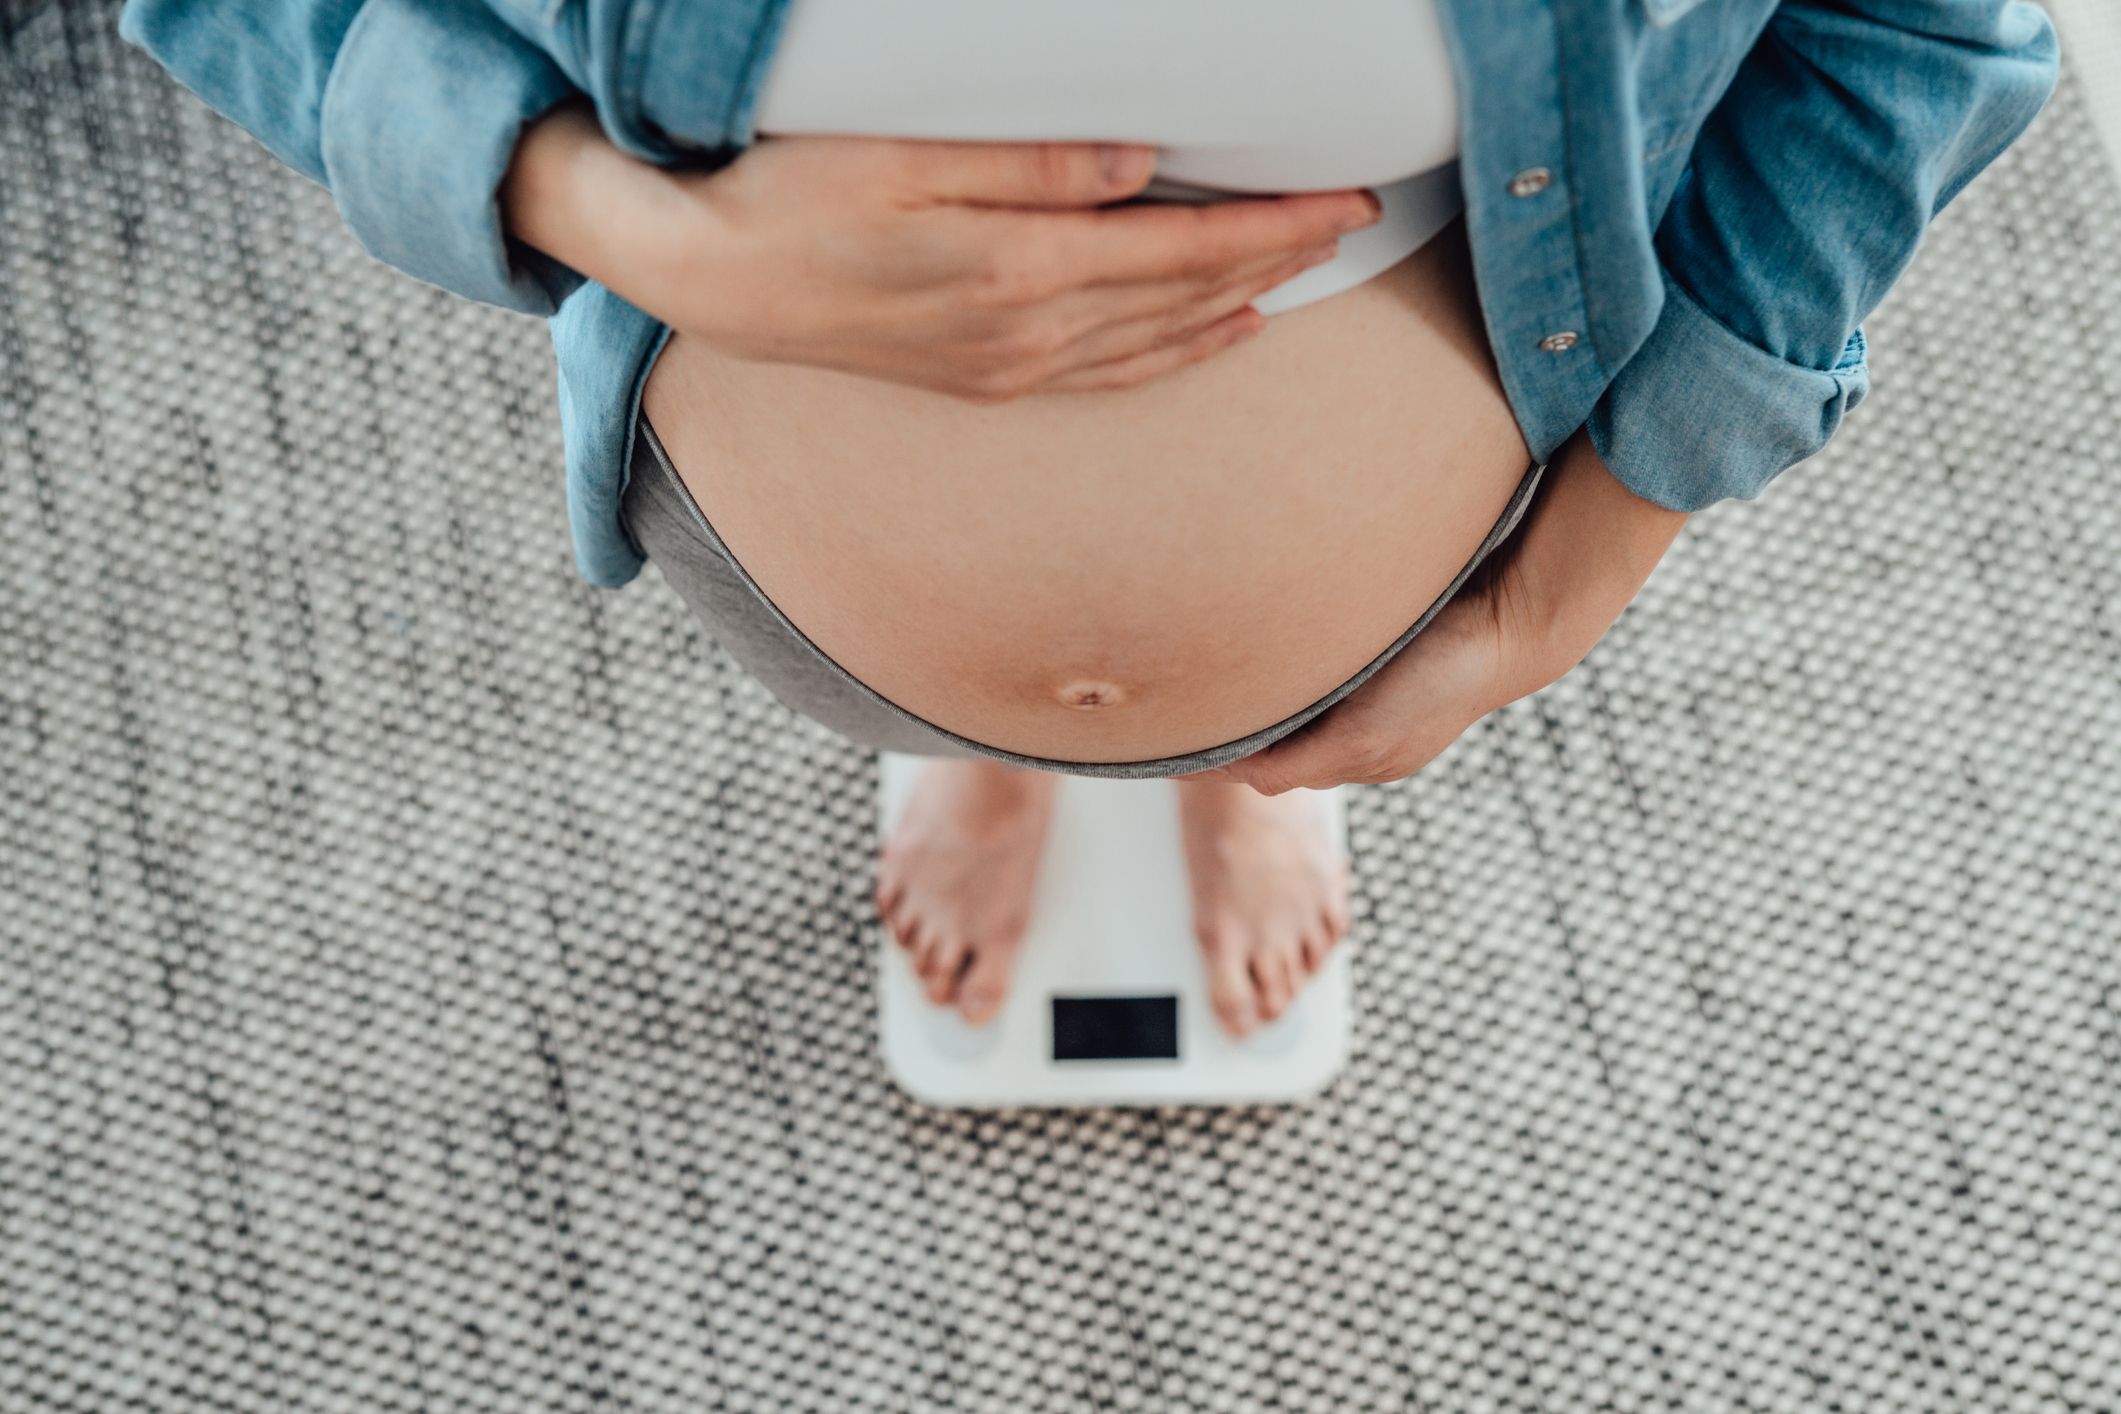 Peso embarazo: dieta para no engordar